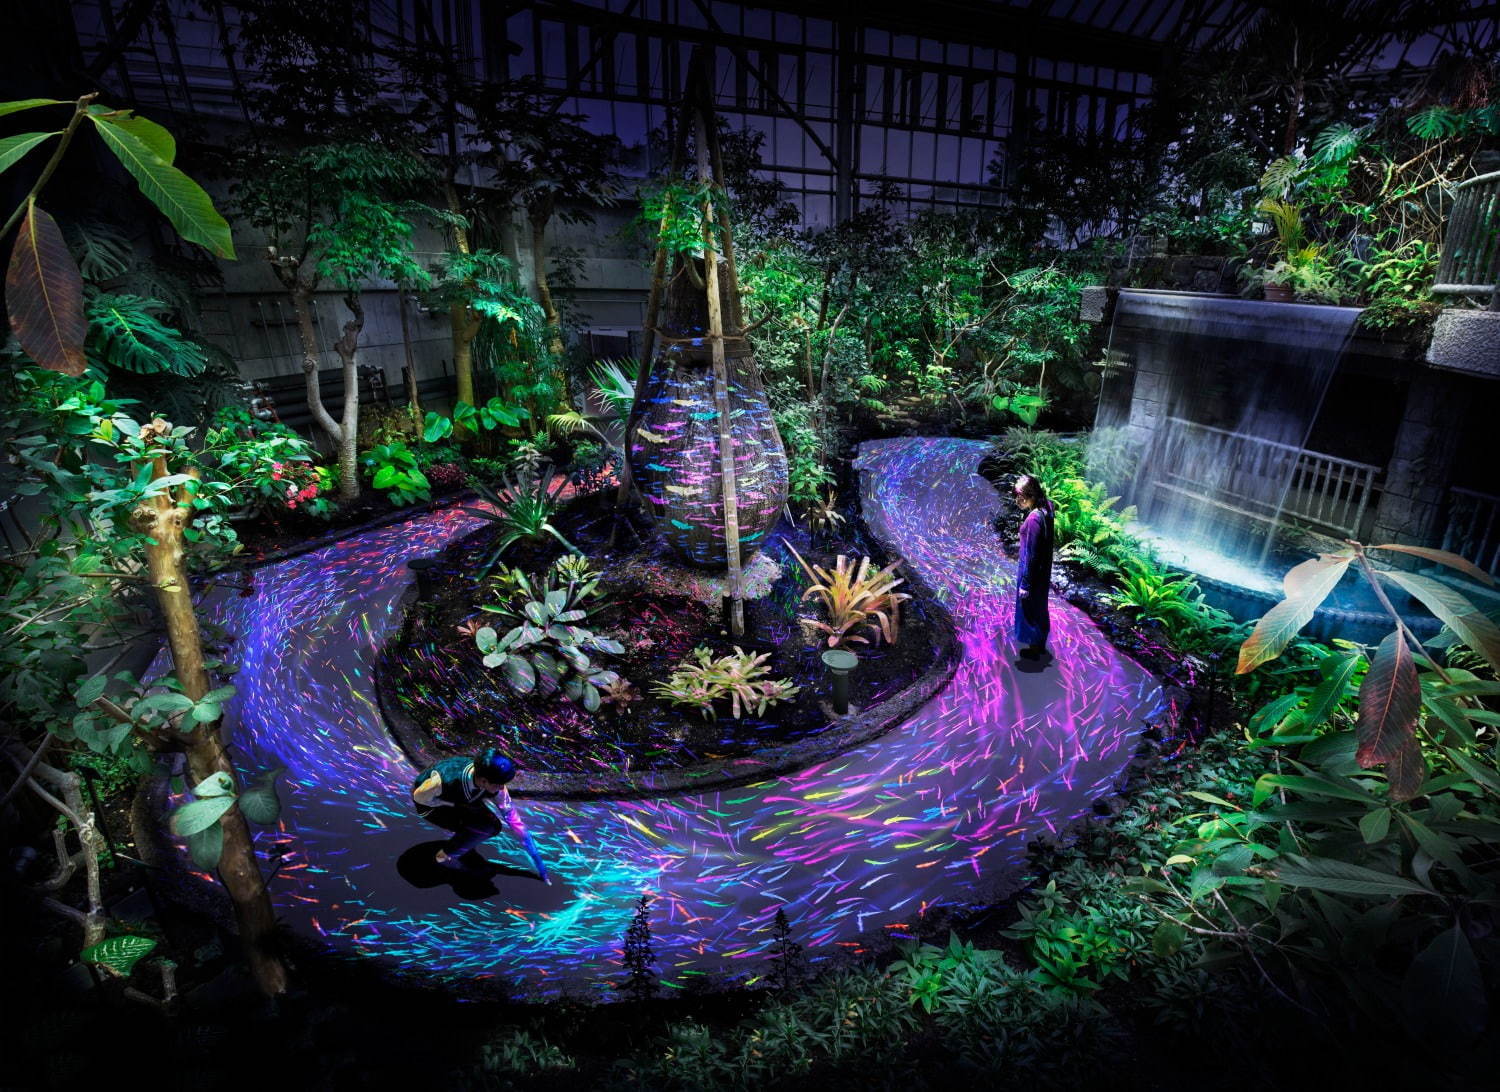 チームラボのデジタルアート展が山口 ときわ公園で 夜の植物館で泳ぐ魚や光り輝く植物 ファッションプレス